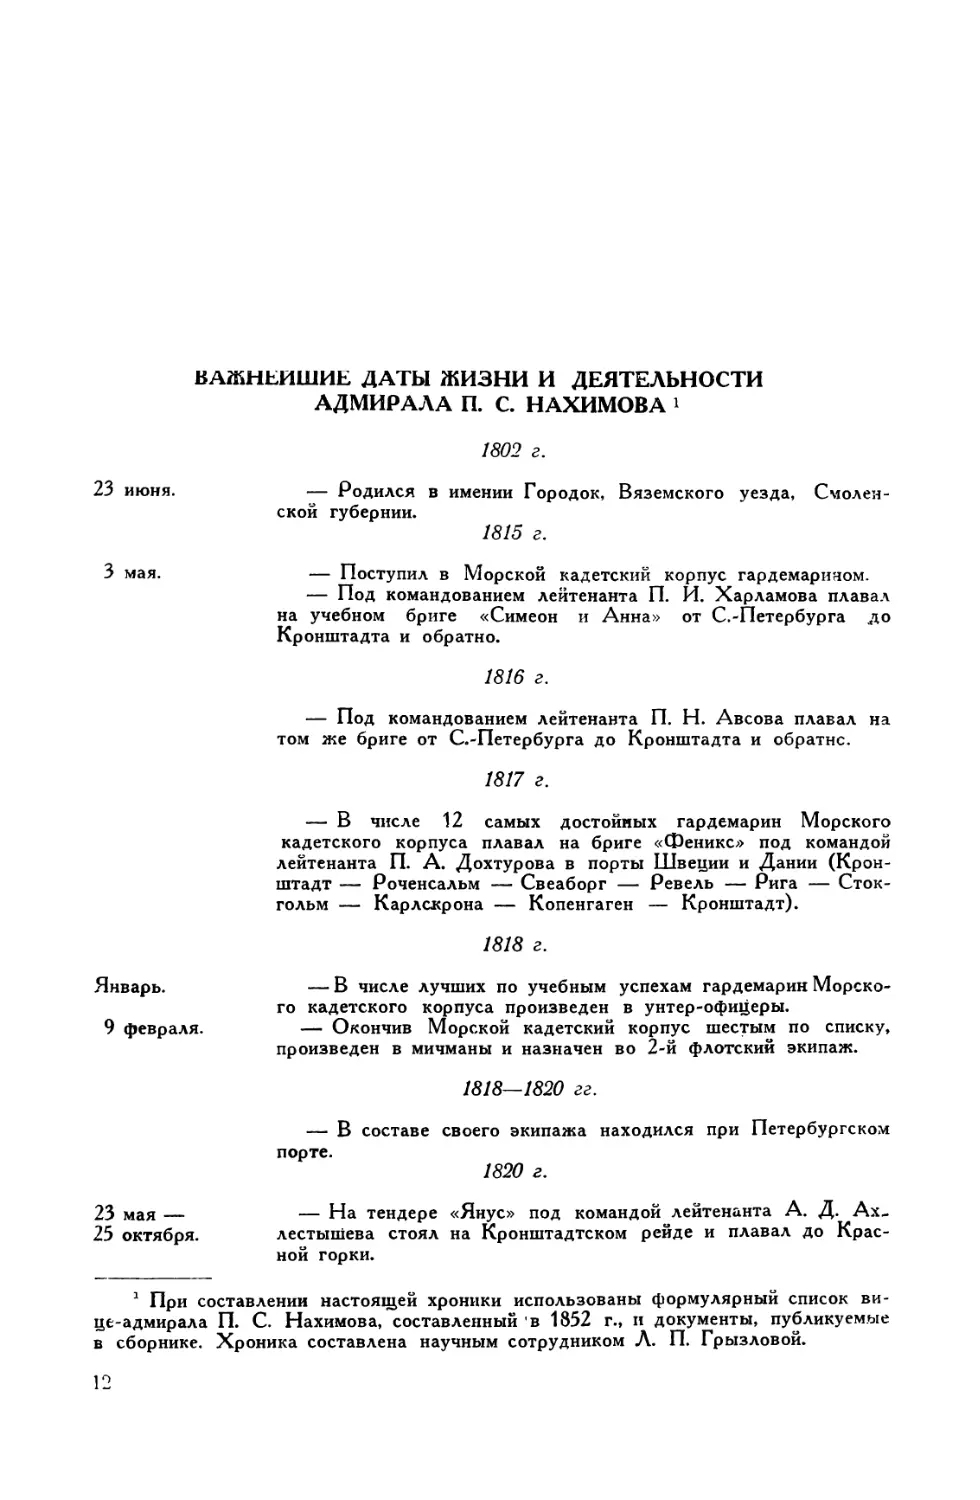 Важнейшие даты жизни и деятельности адмирала П. С. Нахимова